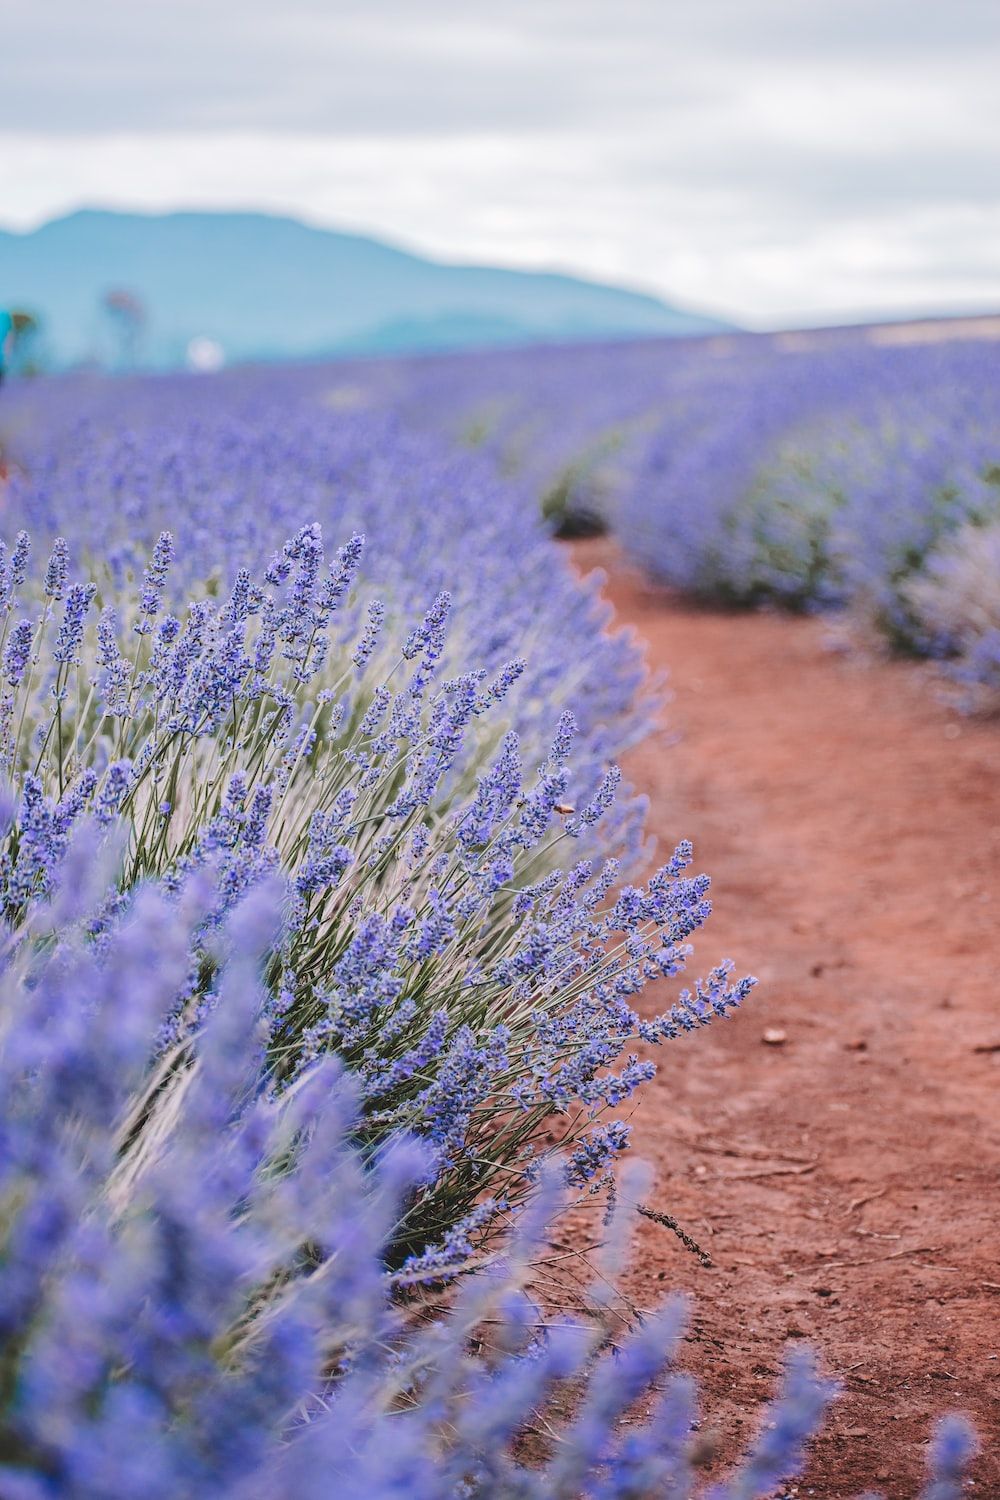 A dirt path through a field of purple lavender flowers. - Farm